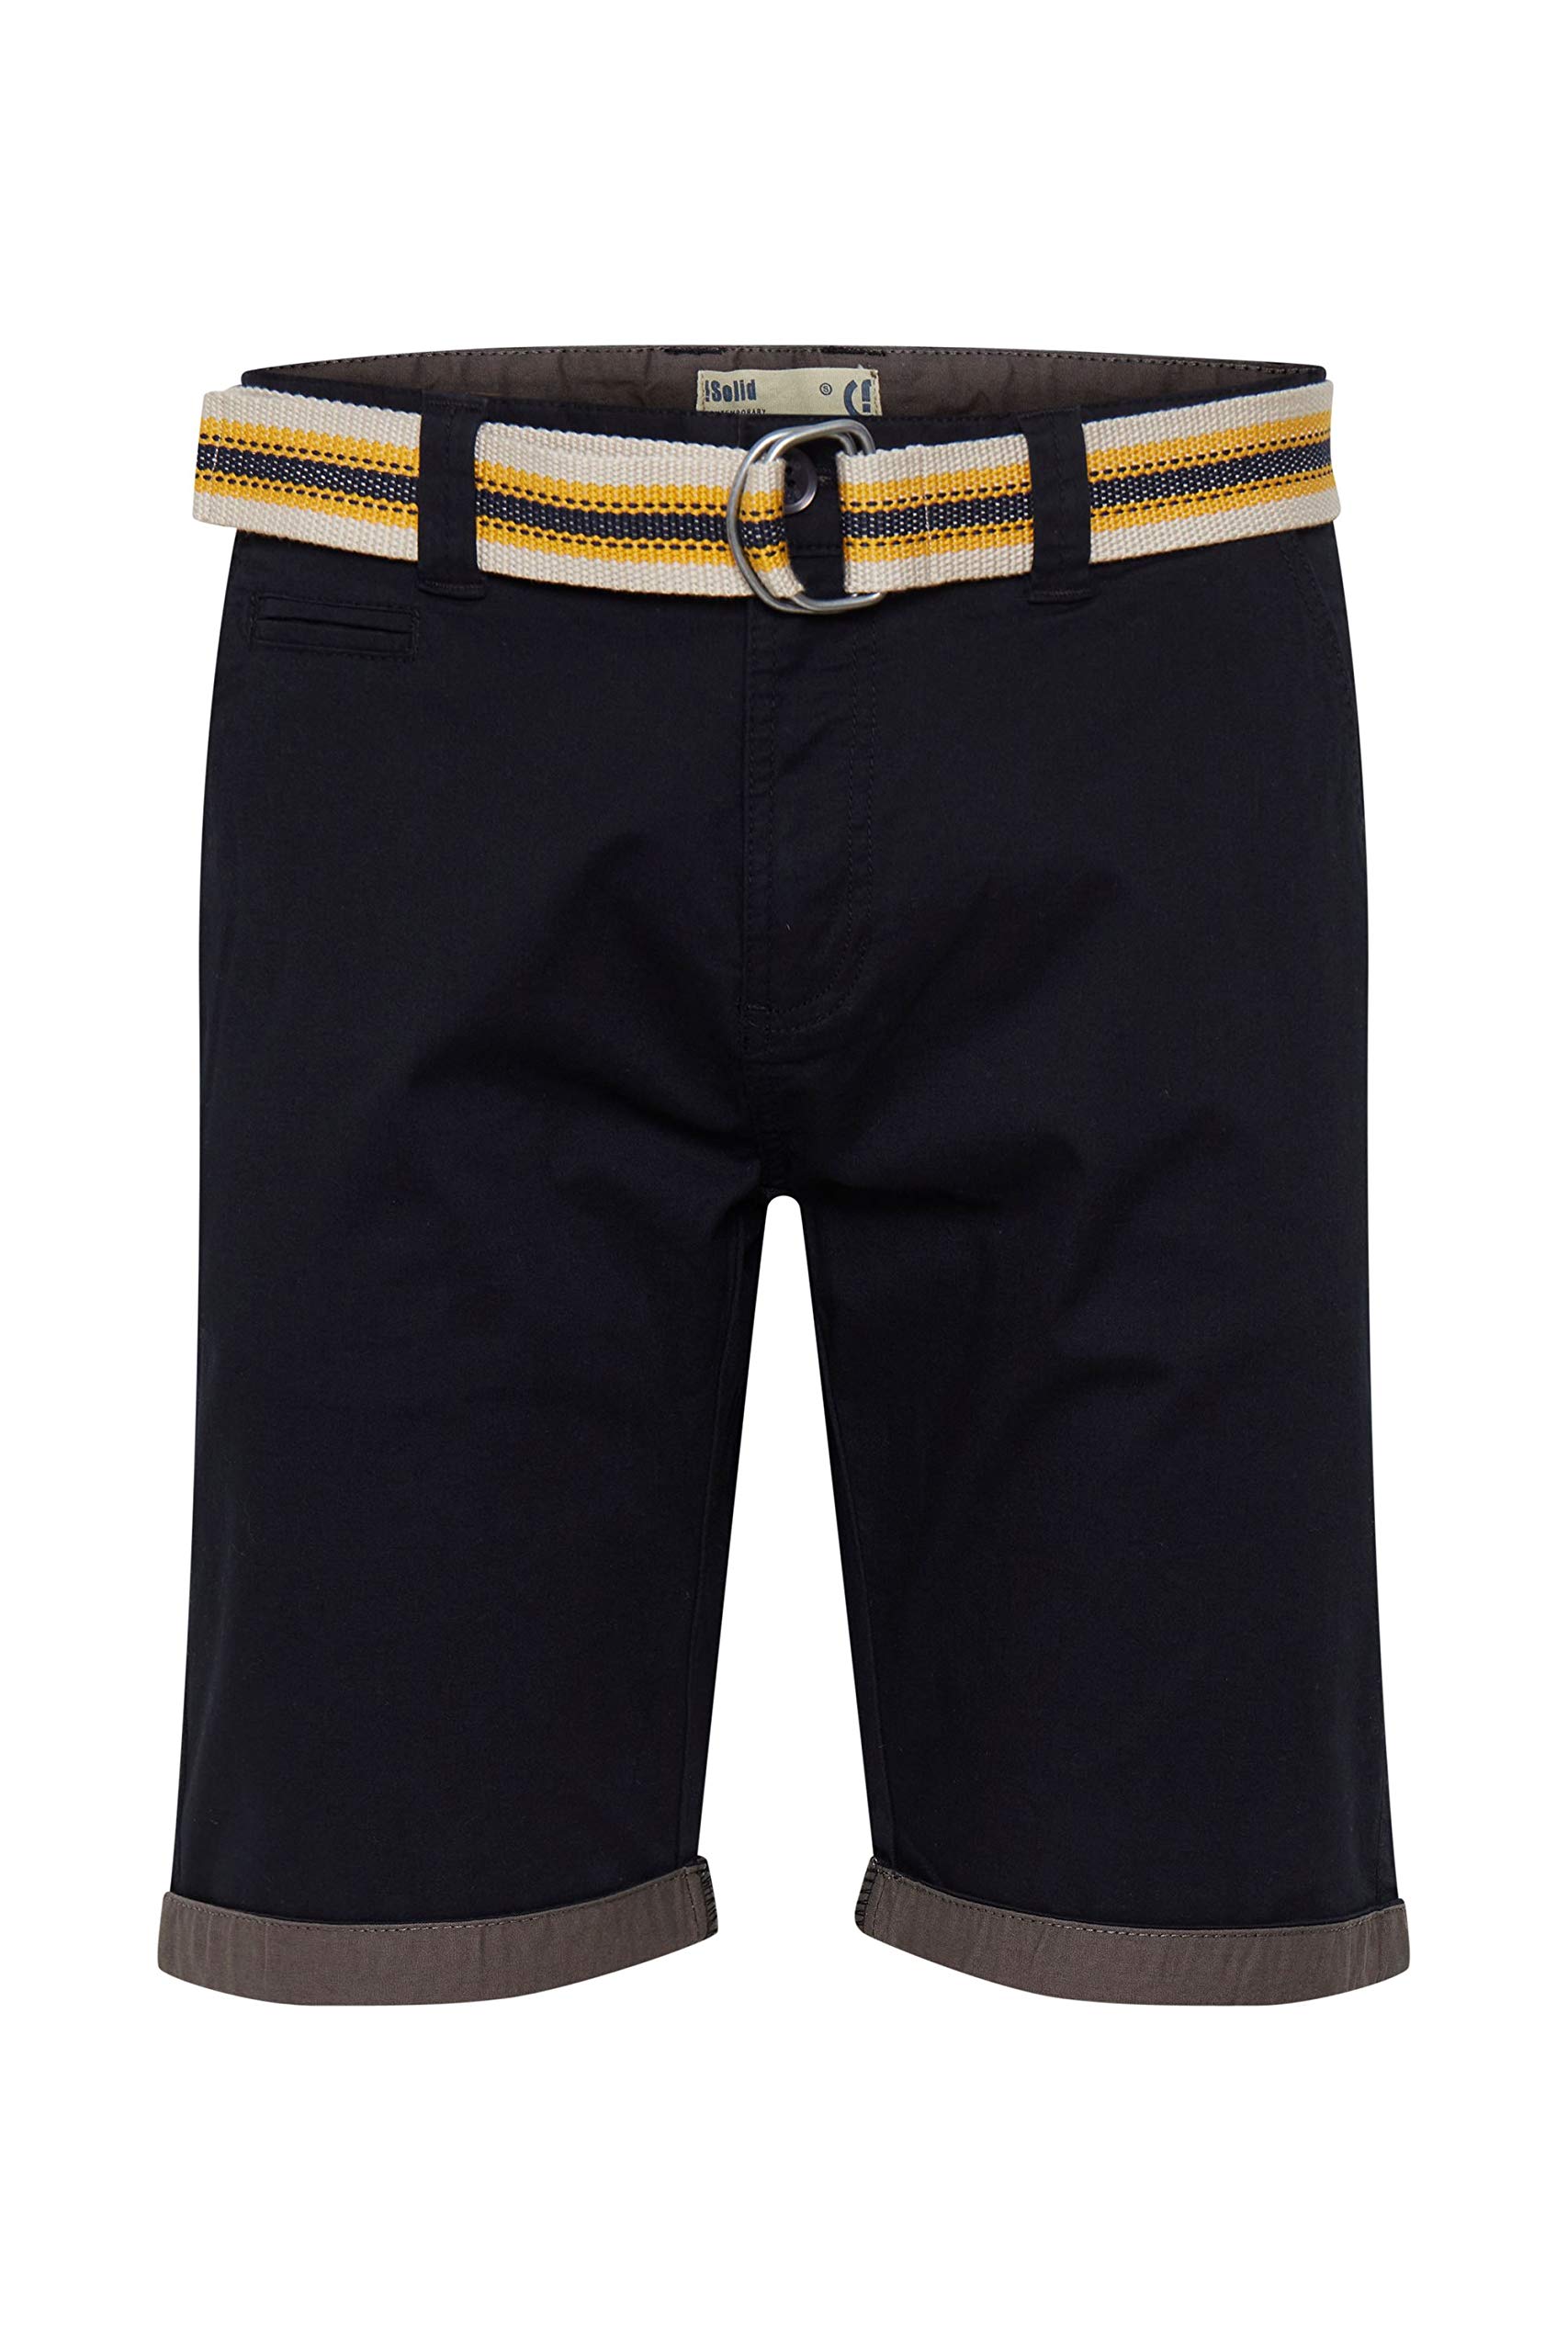 !Solid SDLagos Herren Chino Shorts Bermuda Kurze Hose mit Gürtel und Stretch Regular Fit, Größe:L, Farbe:Black (9000)